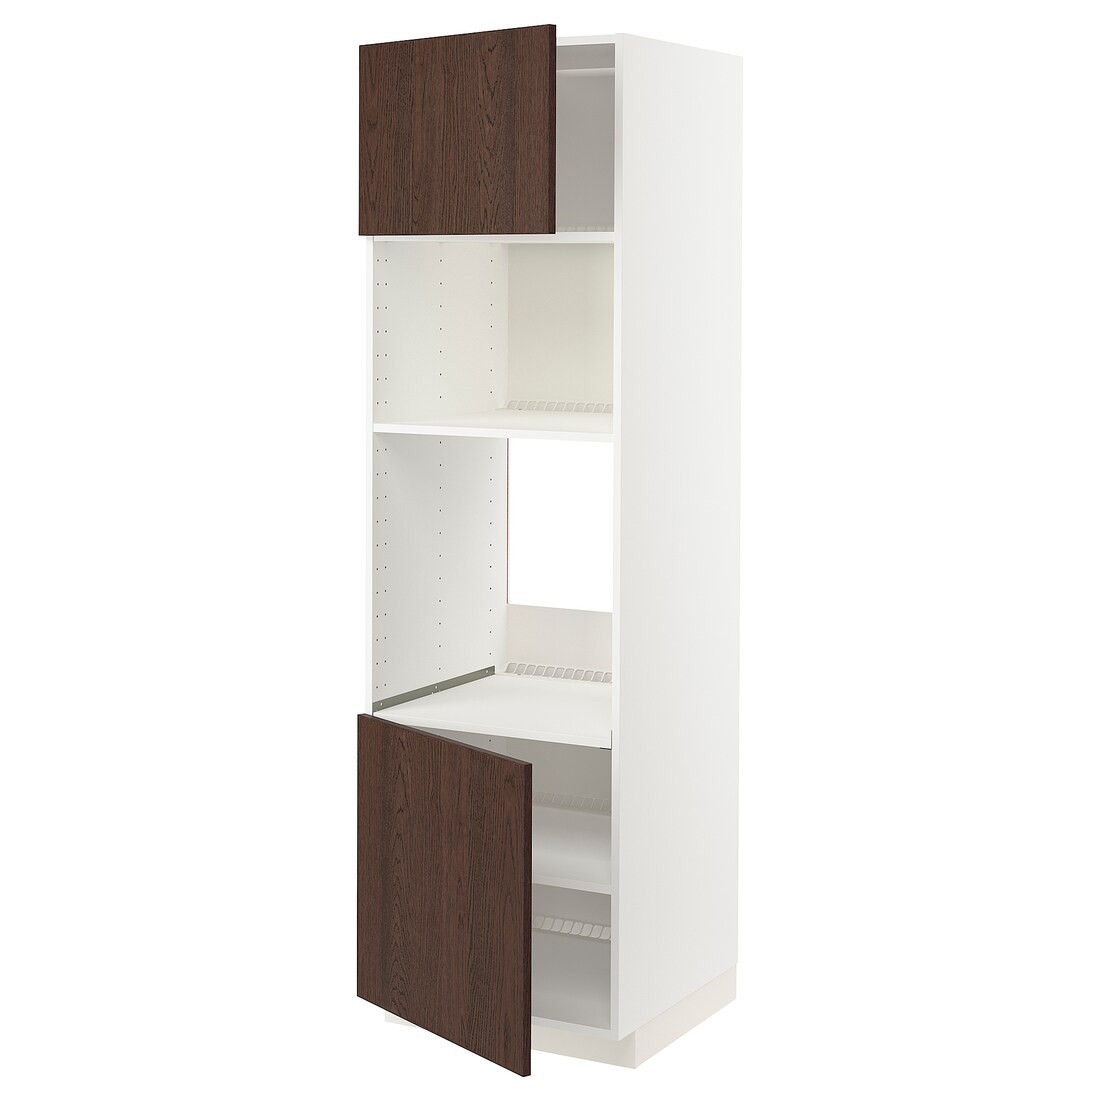 IKEA METOD МЕТОД Высокий шкаф для духовки / СВЧ, белый / Sinarp коричневый, 60x60x200 см 19461058 | 194.610.58